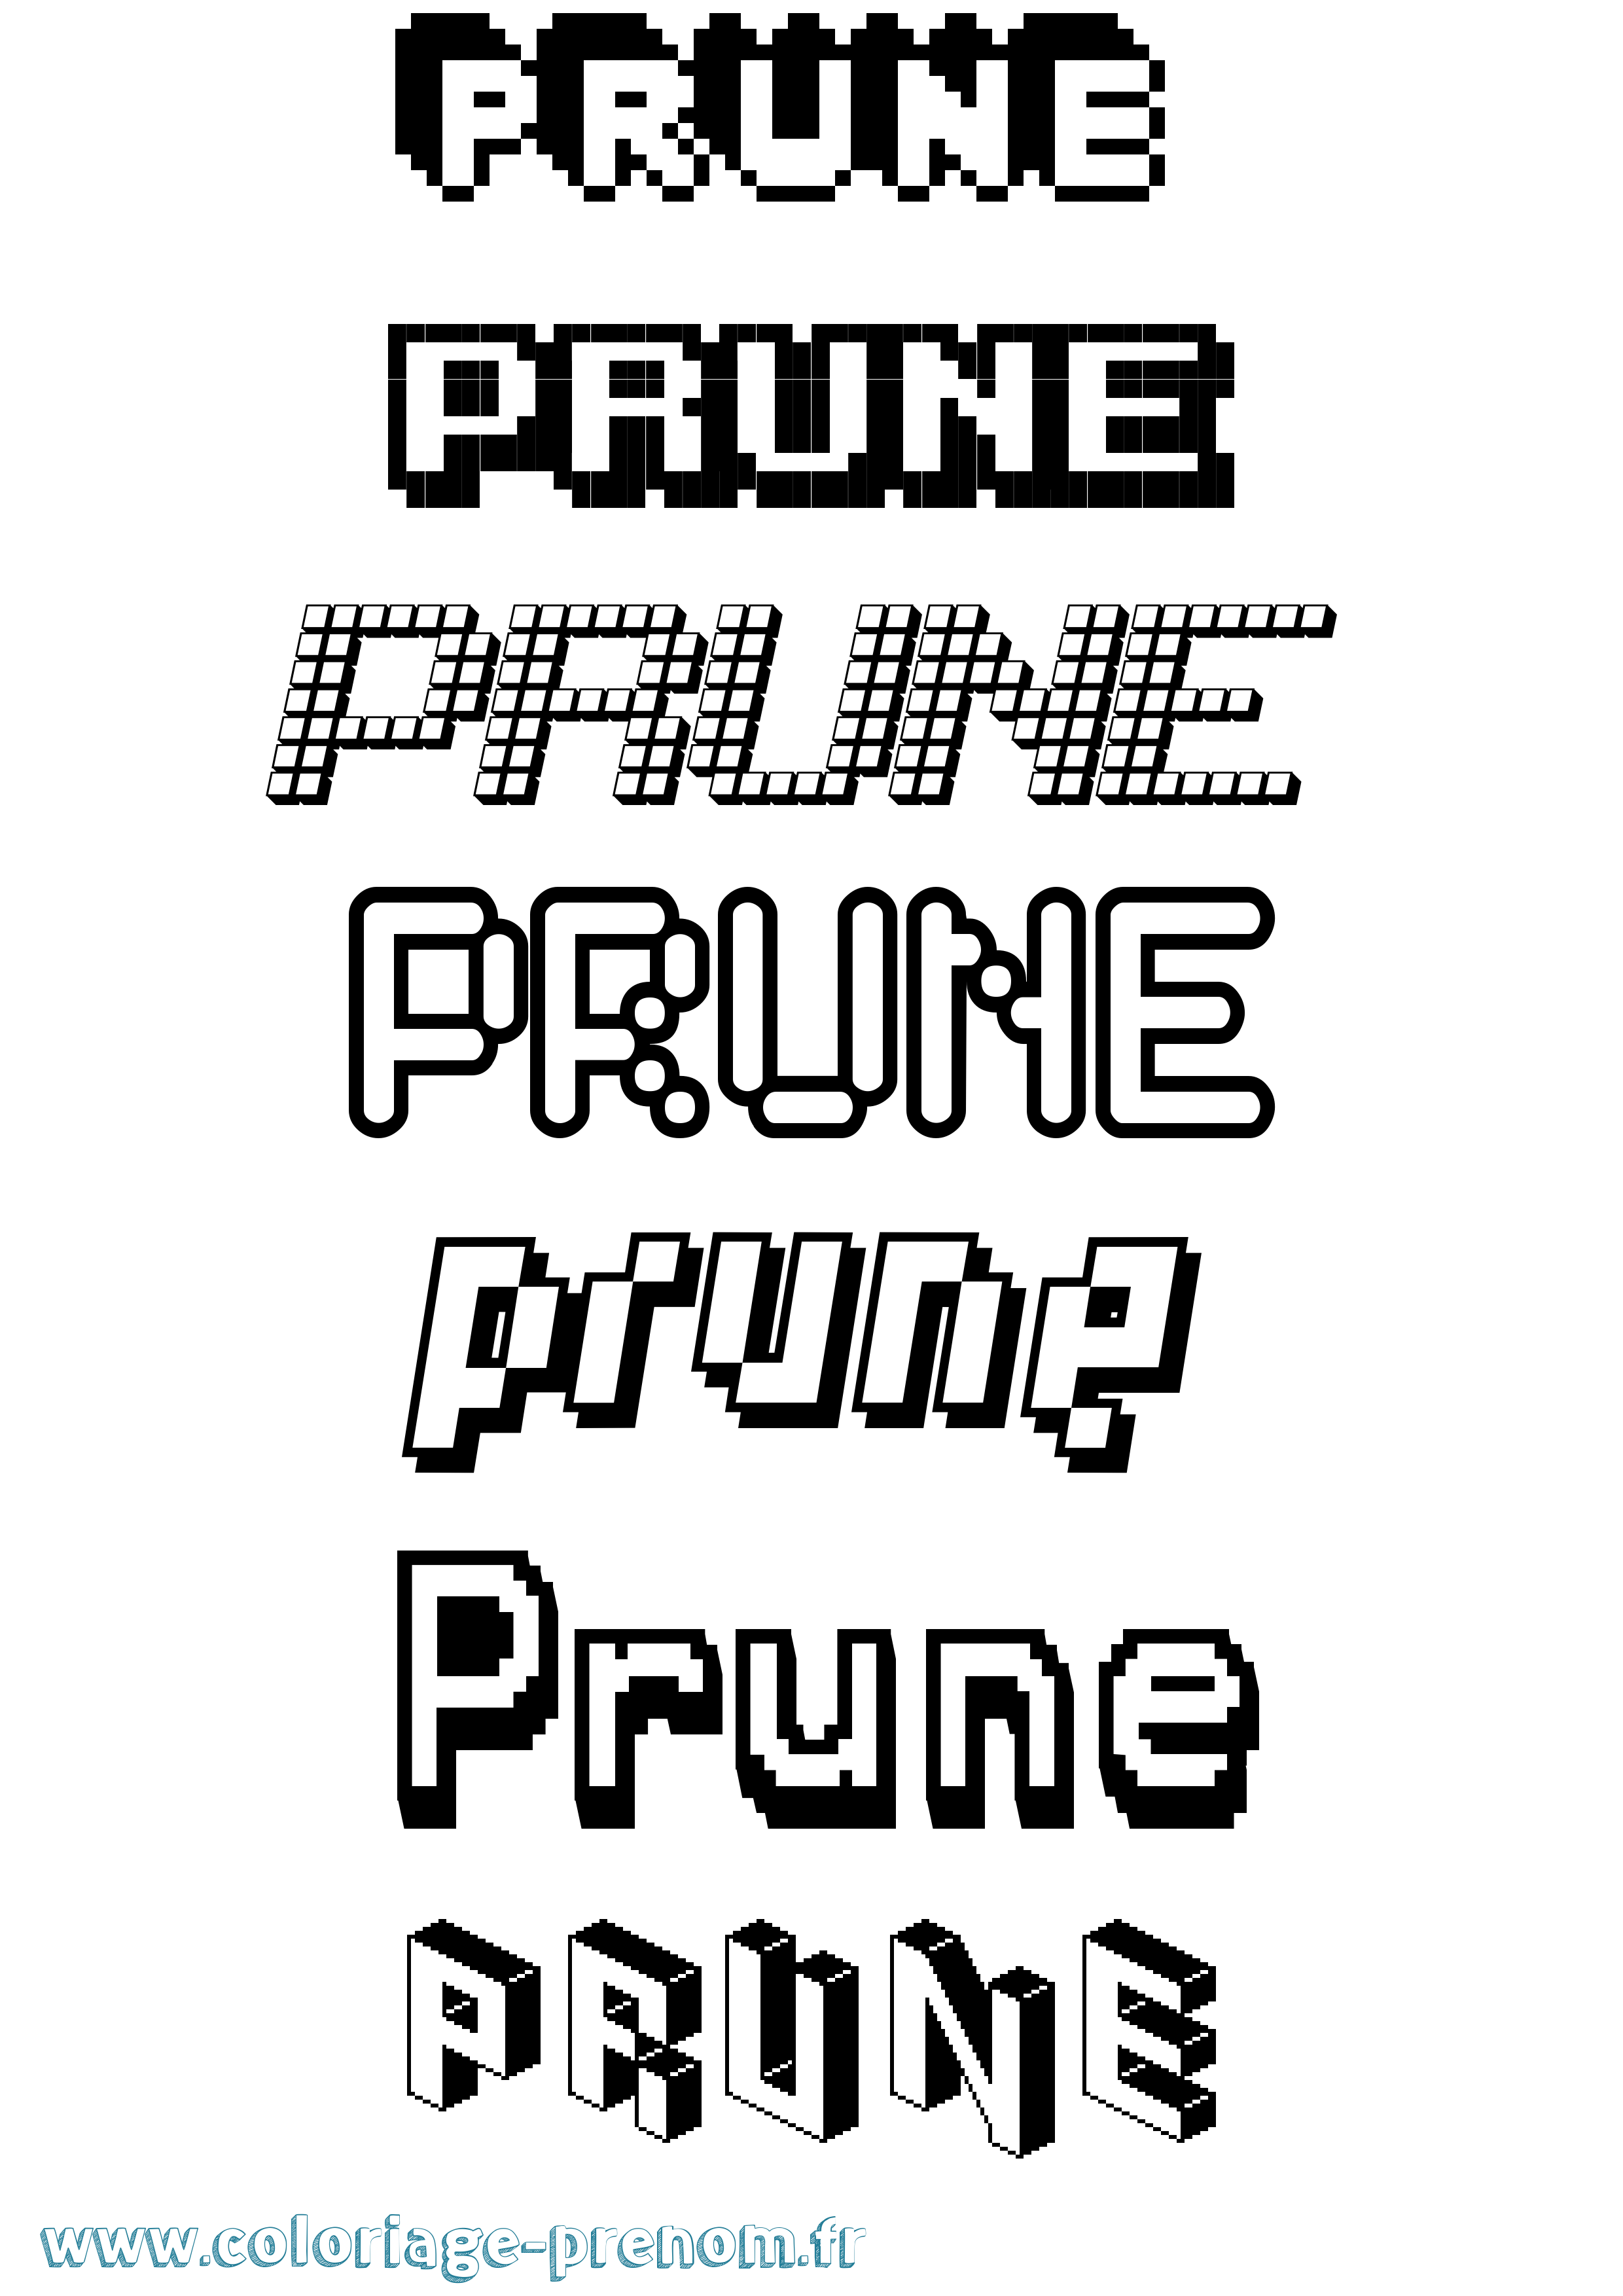 Coloriage prénom Prune Pixel